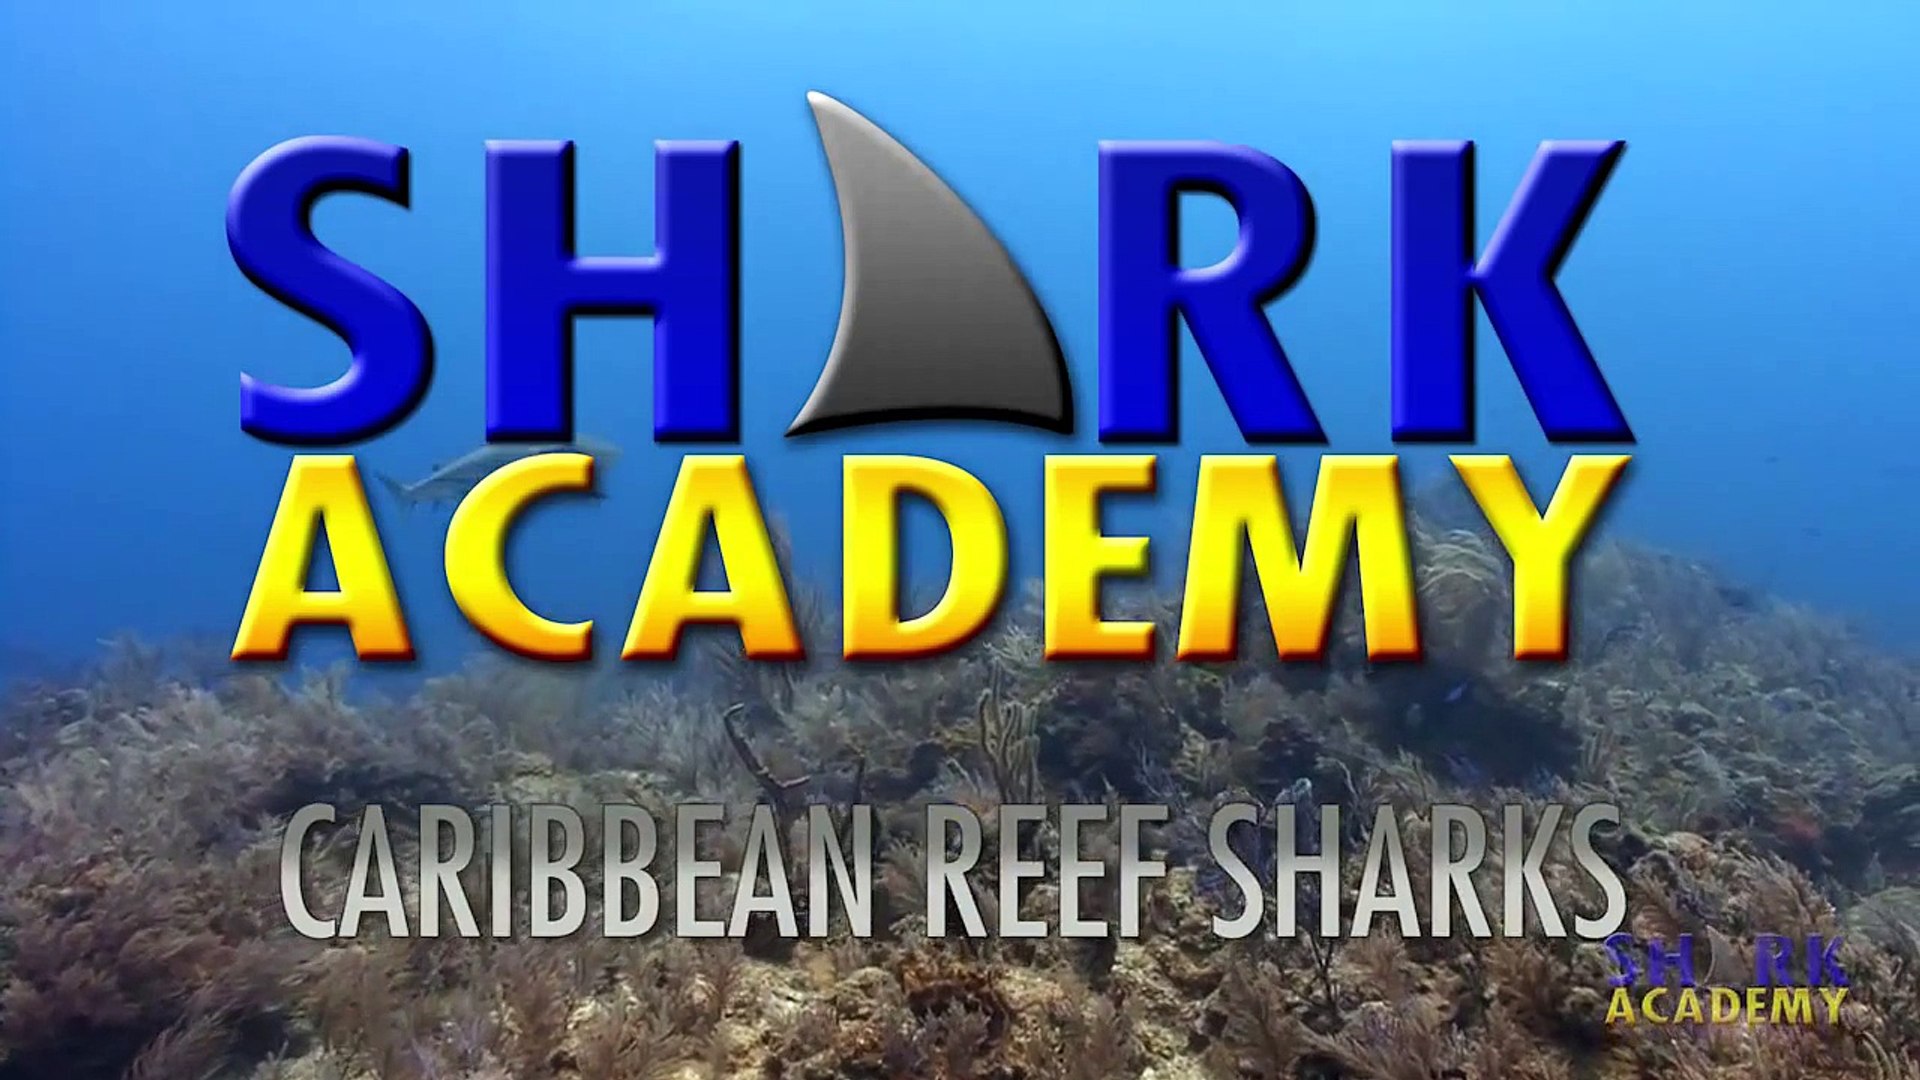 Shark Academy  Caribbean Reef Sharks